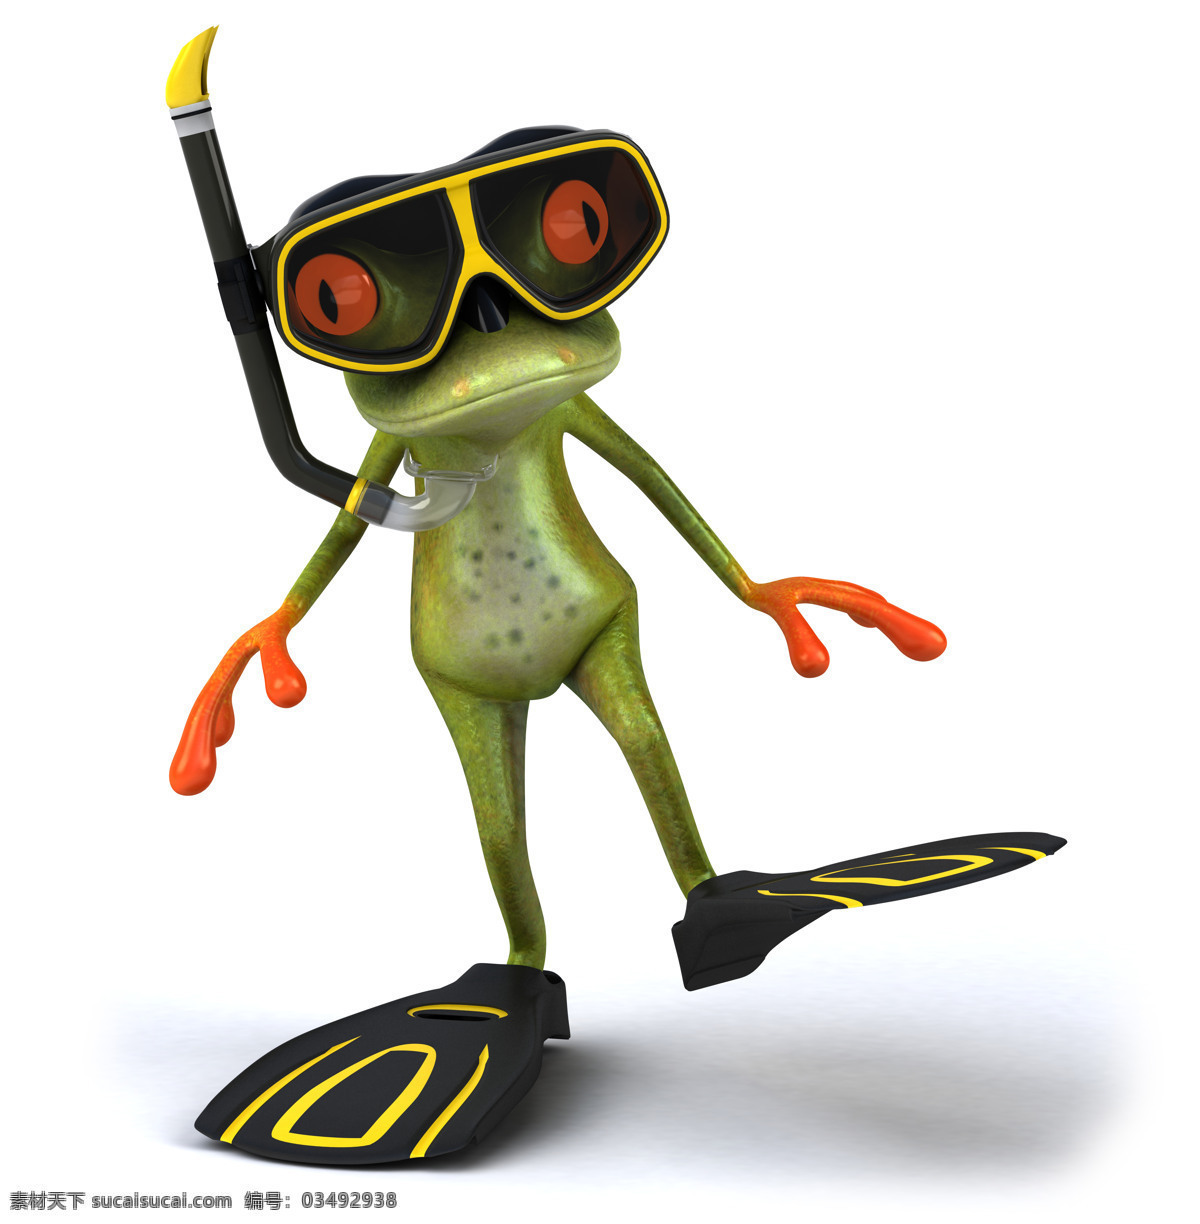 3d青蛙 潜水 卡通青蛙 疯狂青蛙 可爱逗趣青蛙 青蛙 创意 逗趣 青蛙王子 卡通 可爱 3d设计